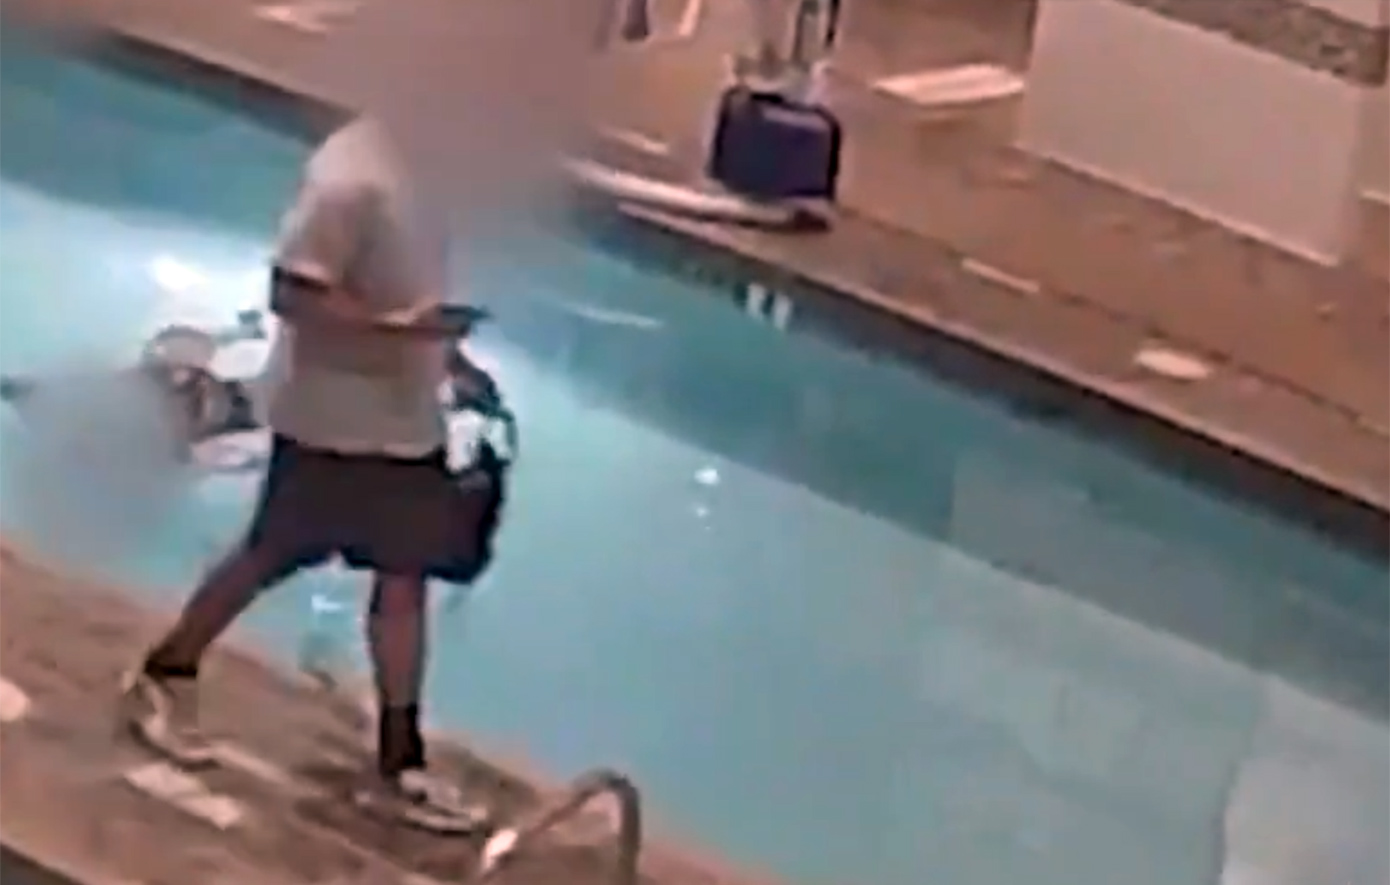 Συγκλονιστικό βίντεο δείχνει γυναίκα να πνίγεται σε πισίνα για αρκετή ώρα και οι γύρω της να αδιαφορούν